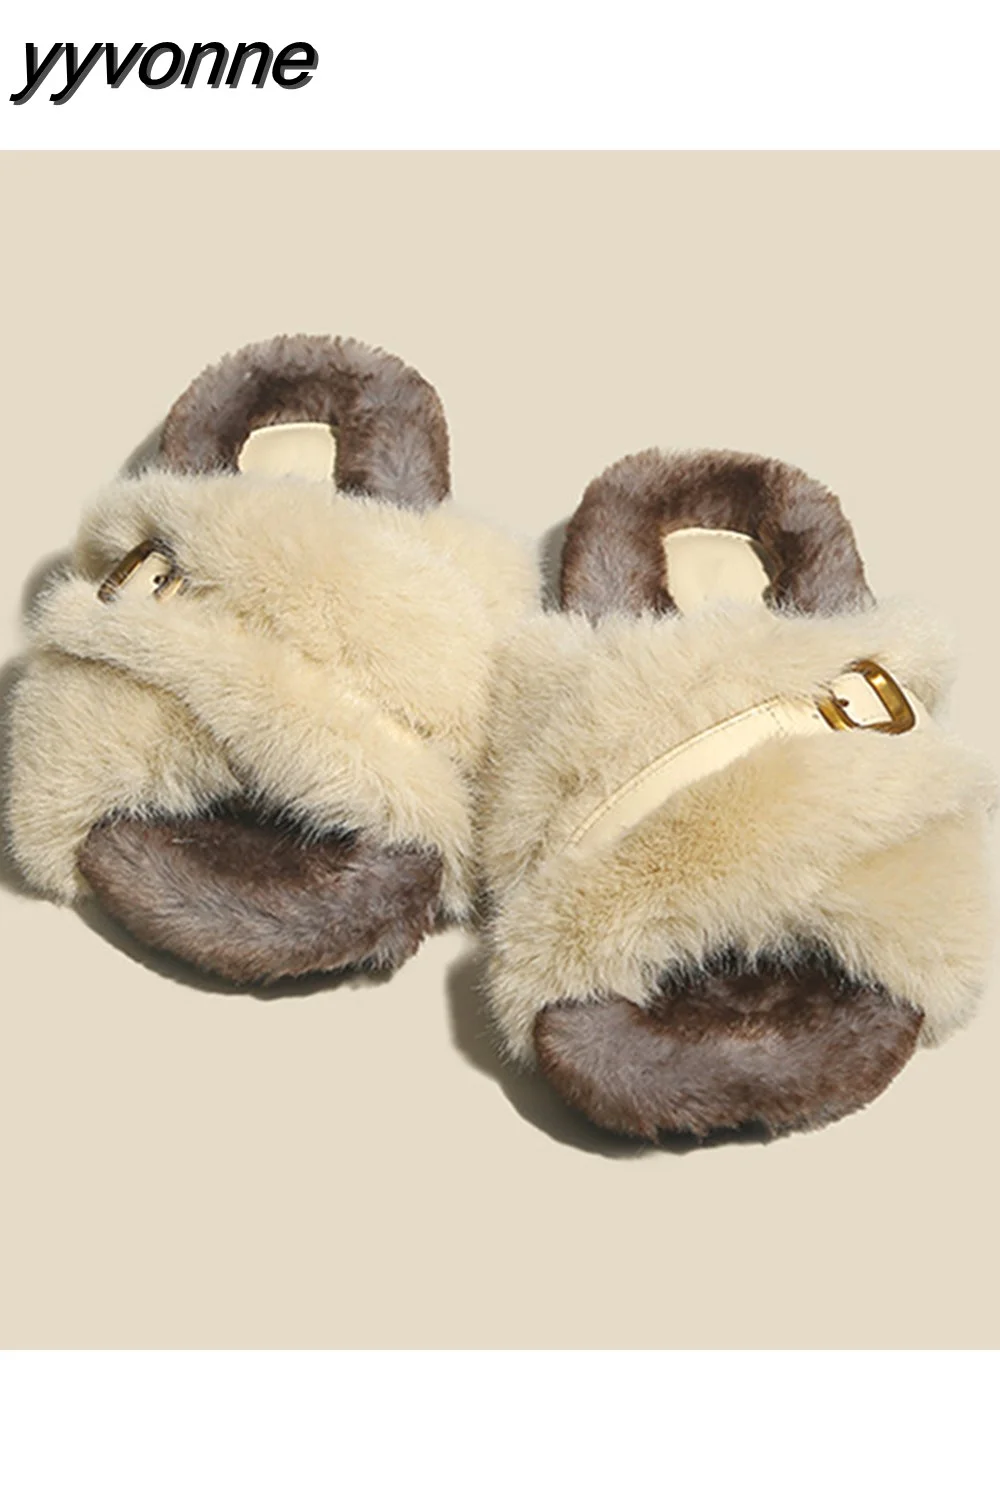 yyvonne Winter Women Cross Fluffy Slipper Casual Fashion Metal Buckle Artificial Plush Inside Soft Slides Shoe